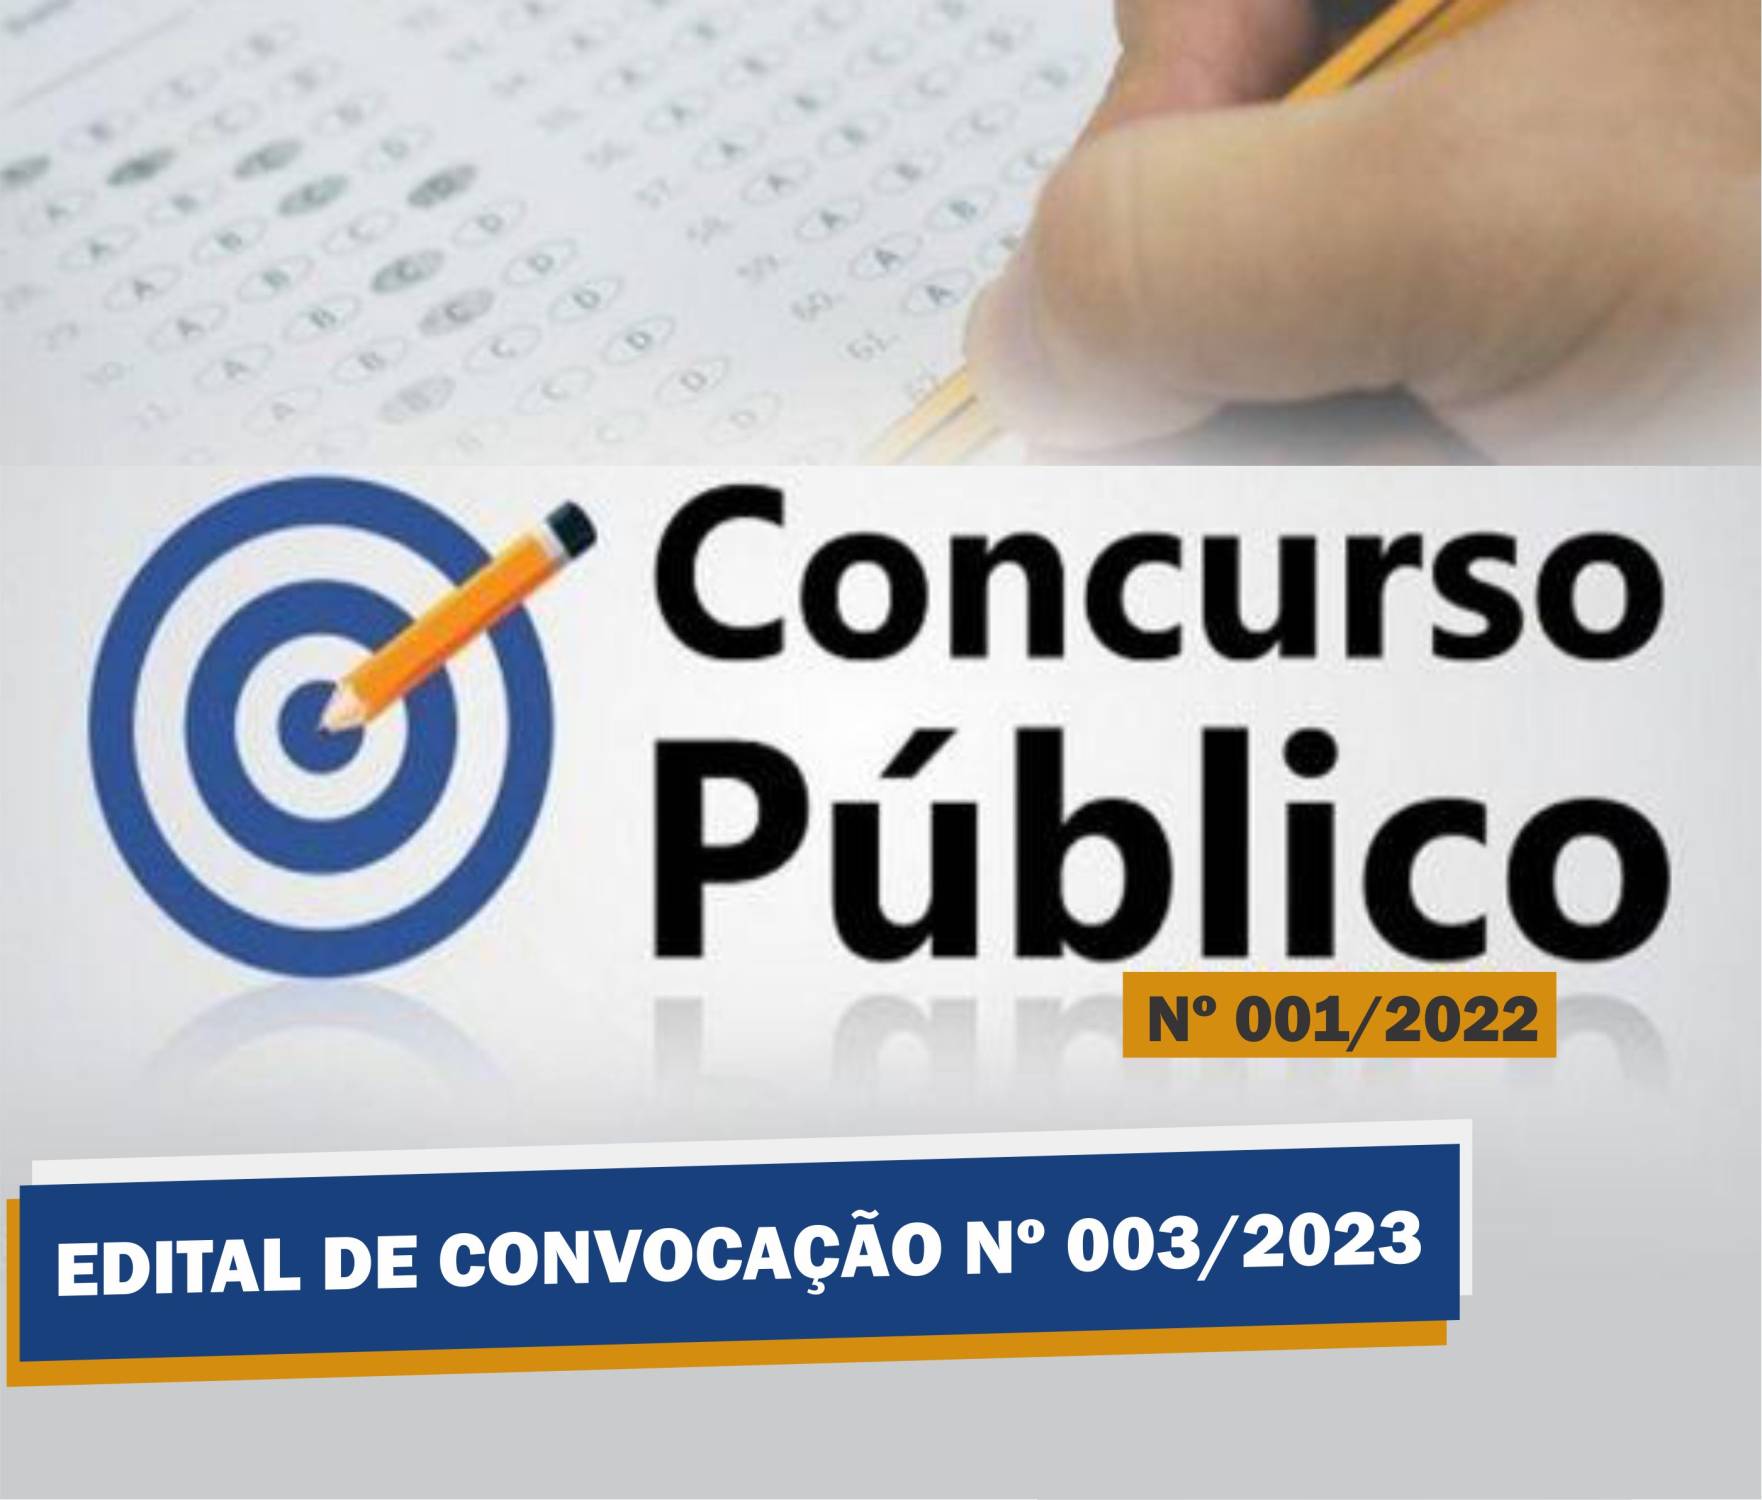 Edital de Convocação Nº 003 - Concurso Público Nº 001/2022